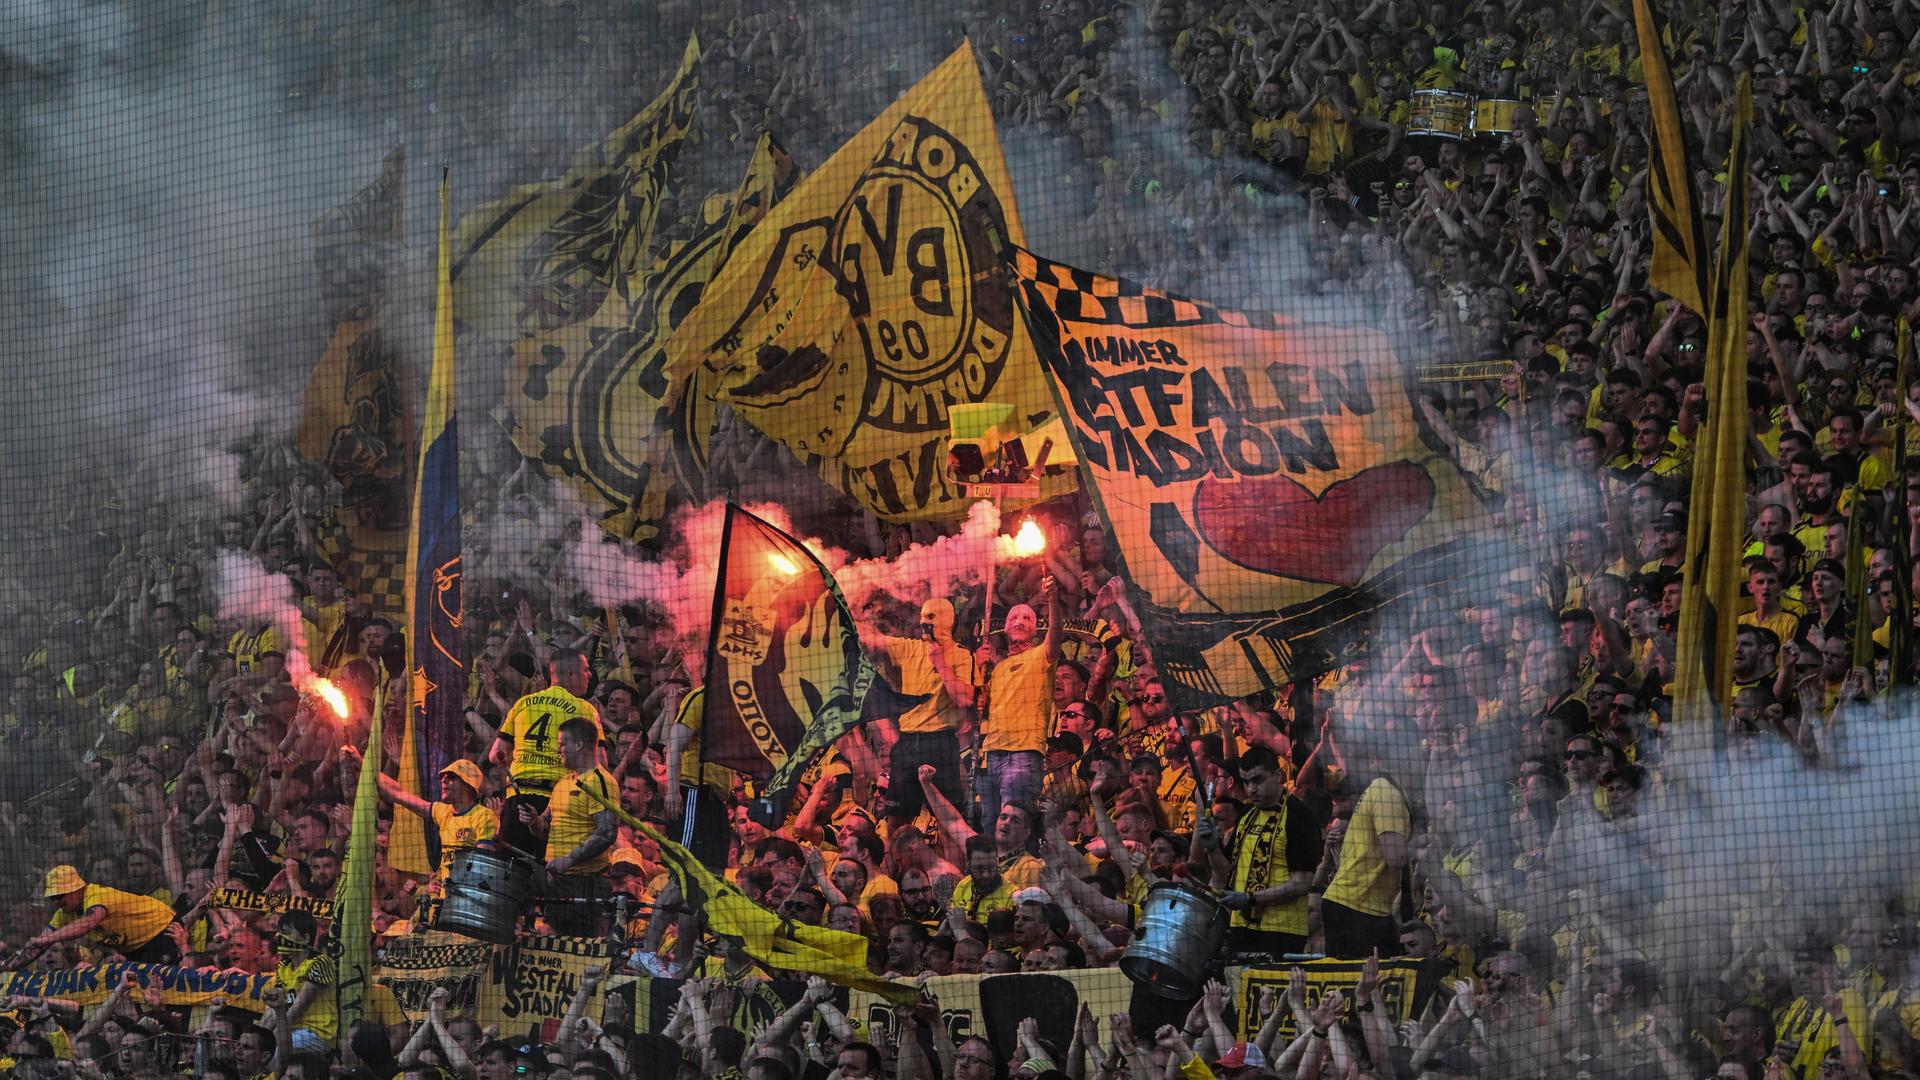 Gelb-schwarz gekleidete Fans auf den Rängen während einer Fußballspiels im Dortmunder Stadion. Manche schwenken fahnen, andere halten brennende Bengalos.